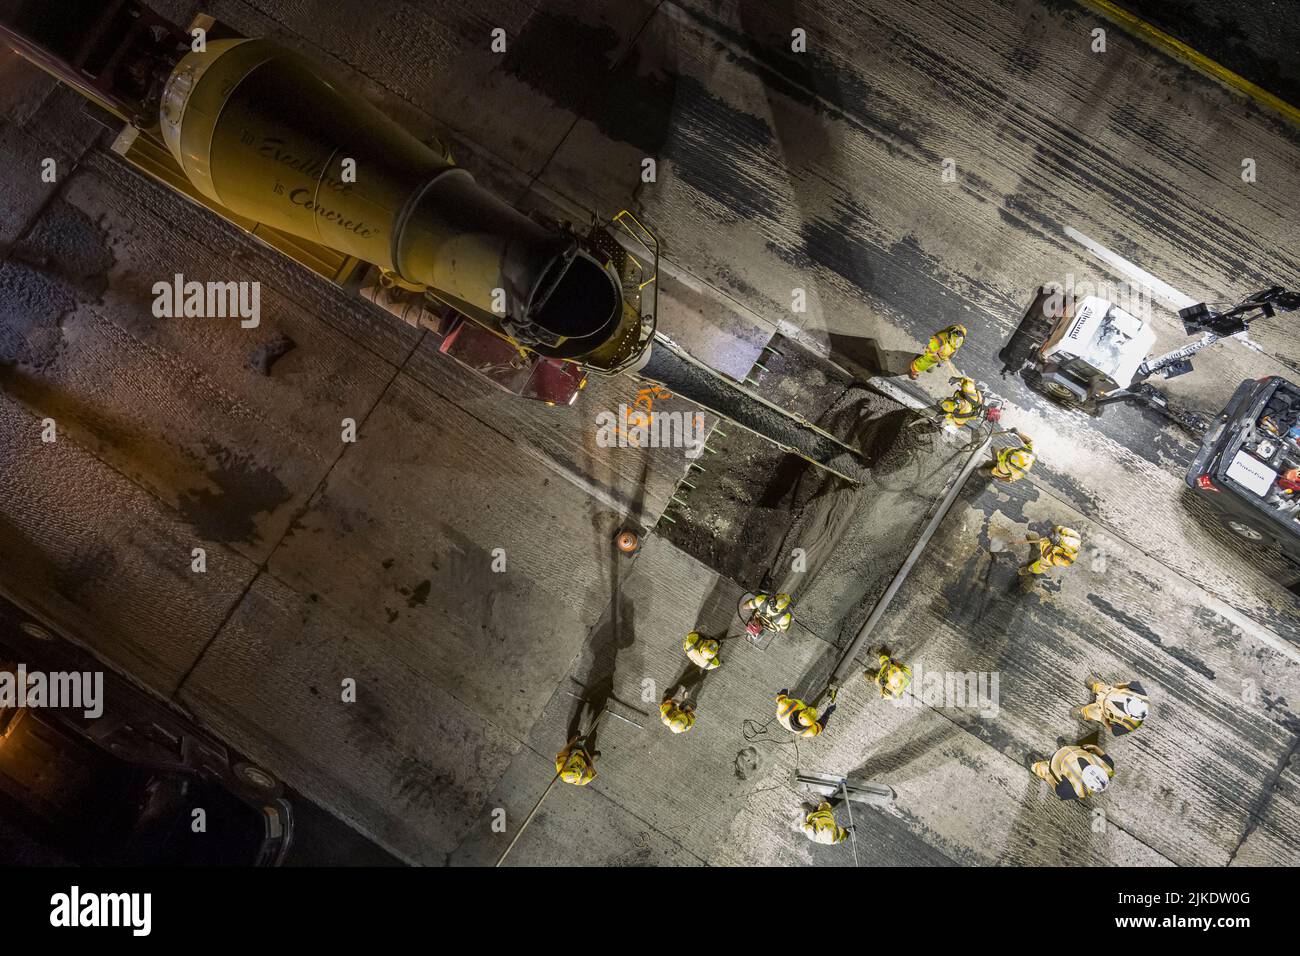 Vista aérea de la reparación nocturna de la autopista, Filadelfia, Pensilvania, EE.UU Foto de stock